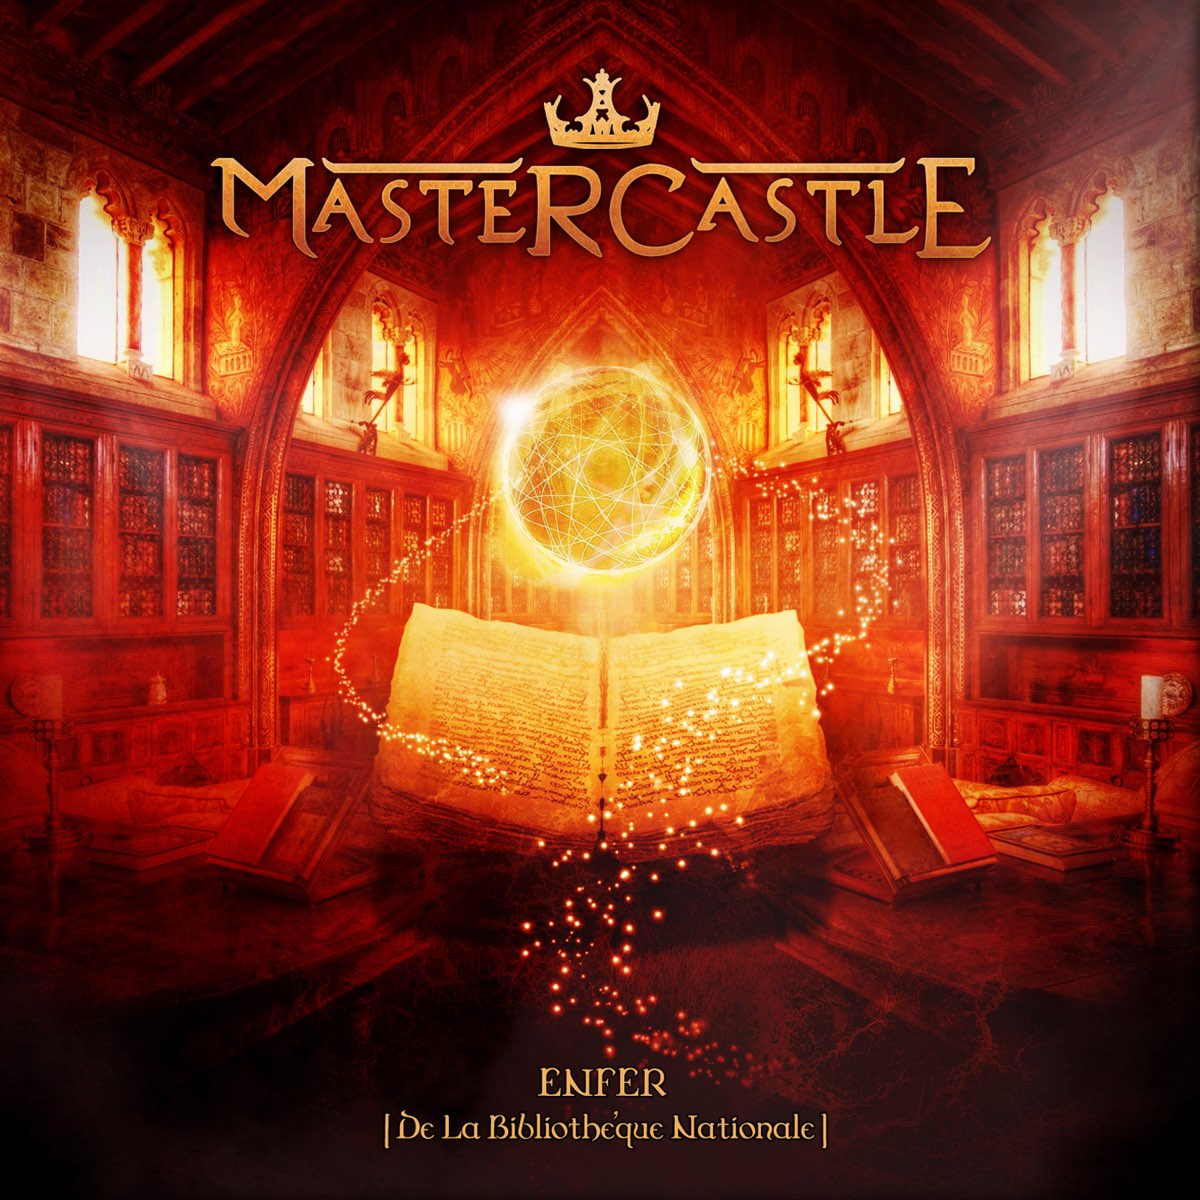 Enfer (De La Bibliothèque Nationale) – Album par Mastercastle – Apple Music